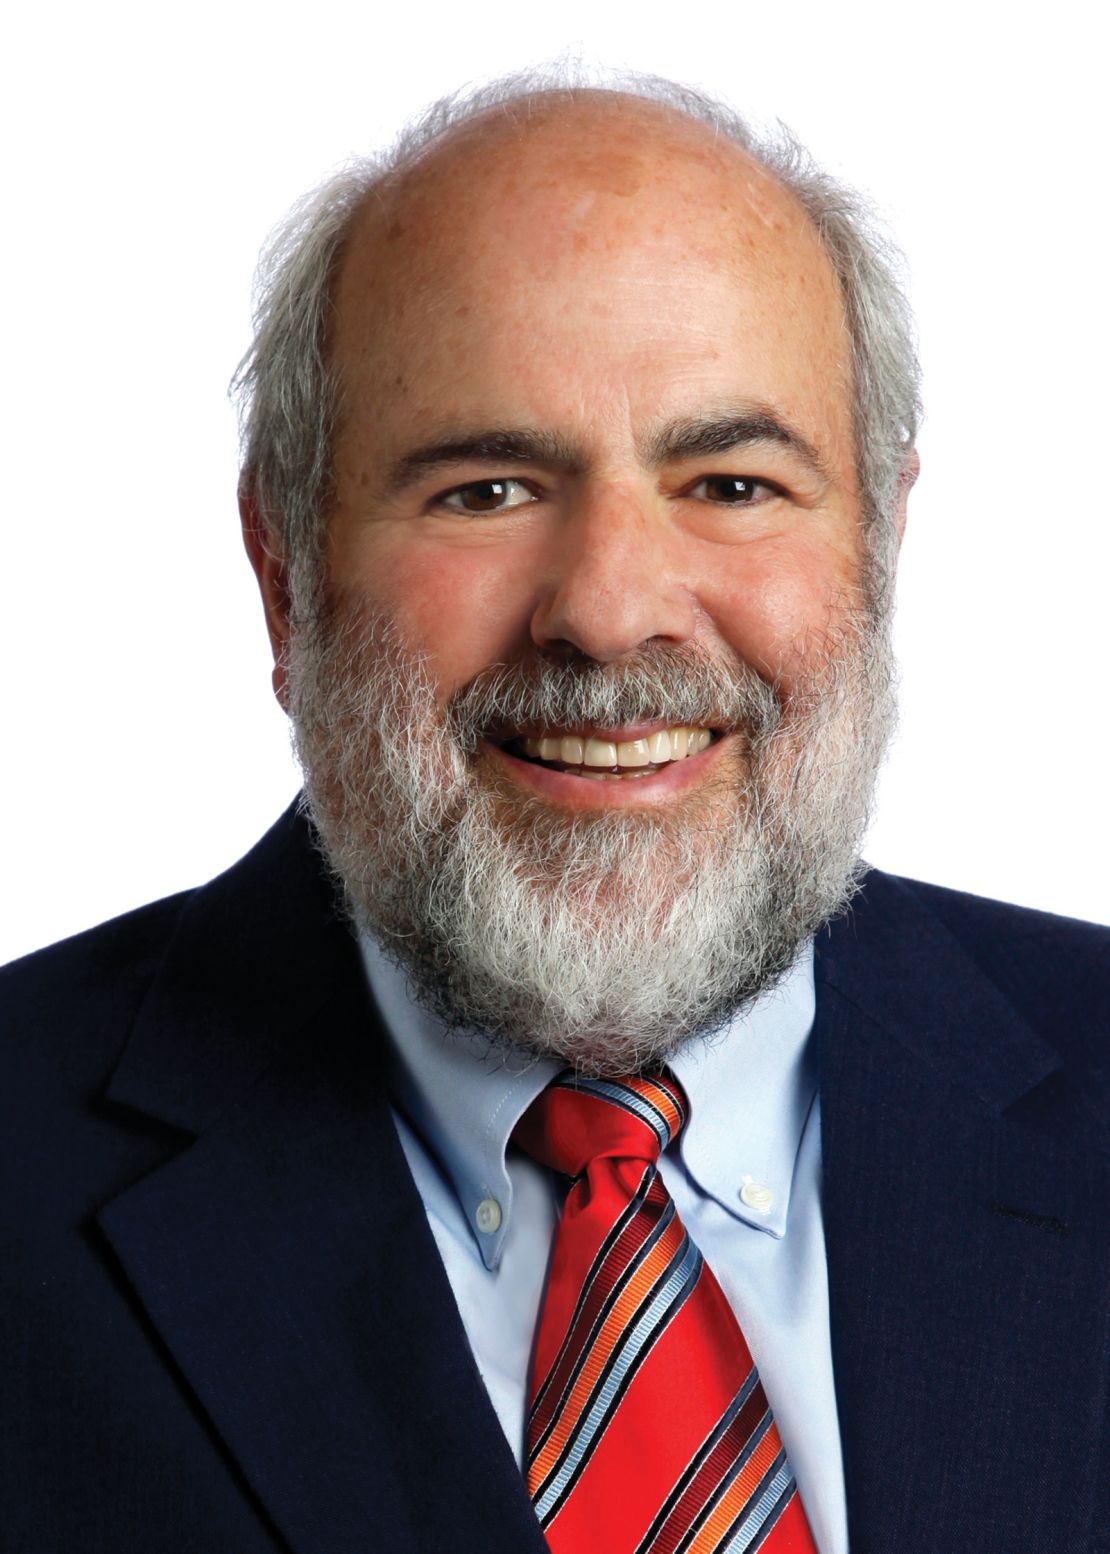 Daniel L. Greenberg